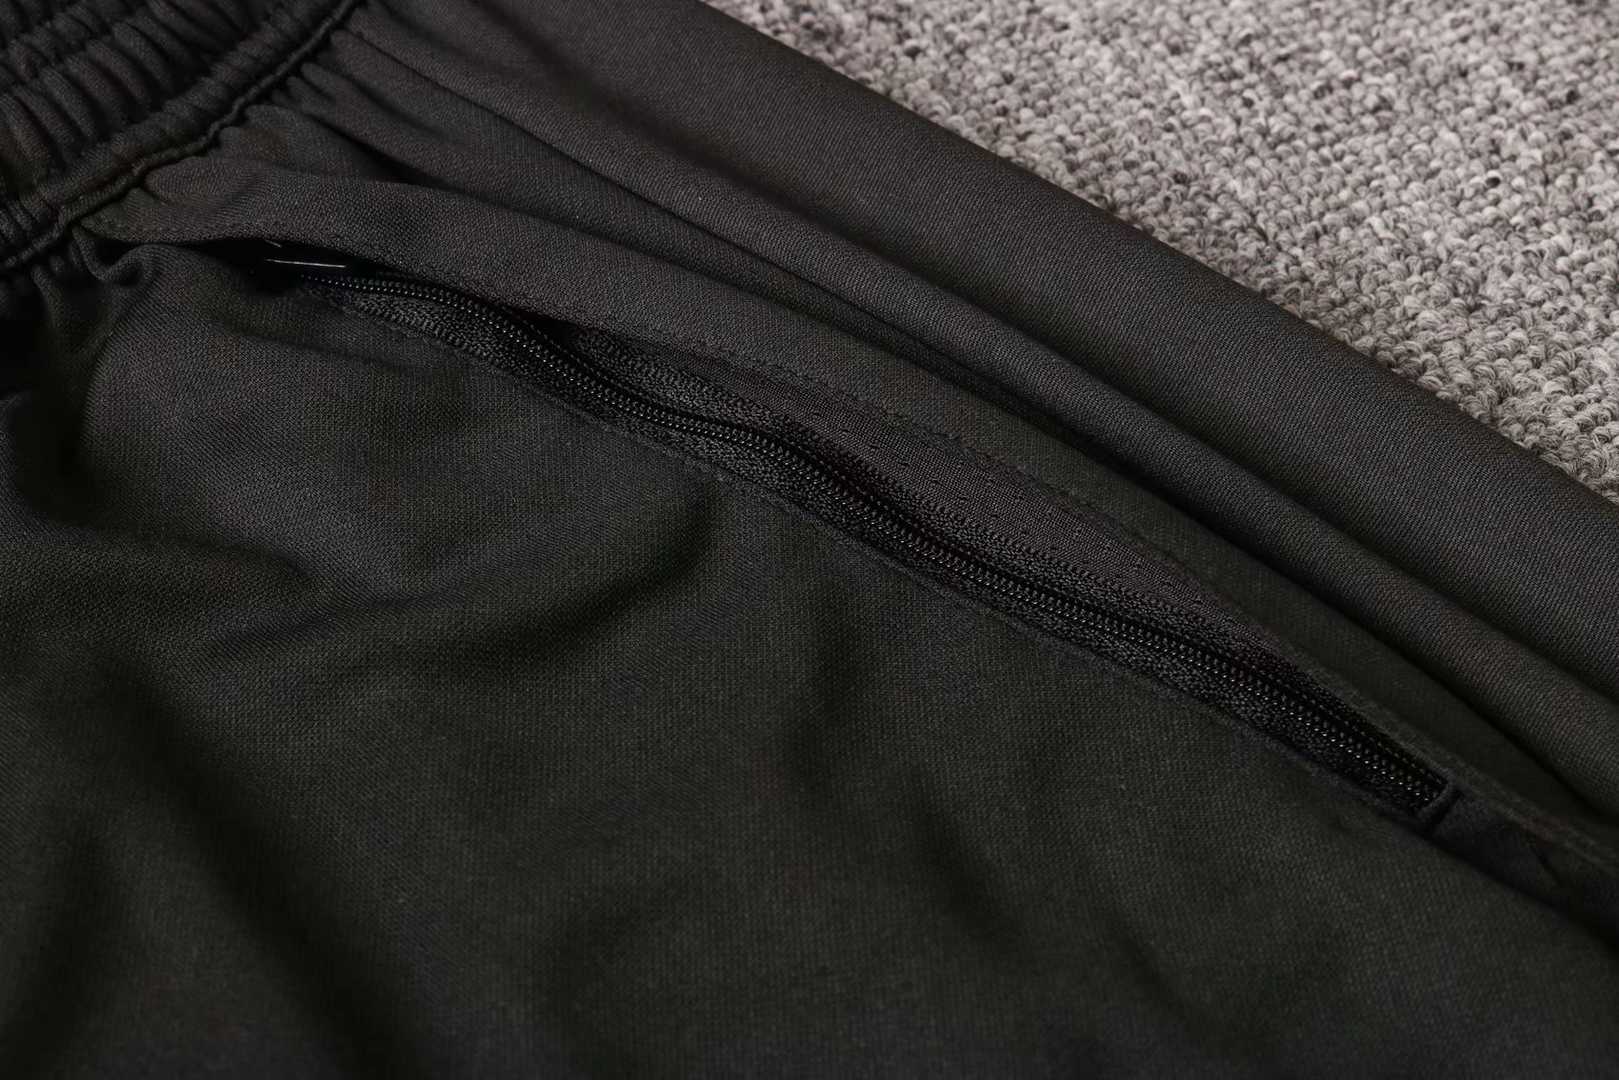 2020/21 Germany Light Grey II Half Zip Mens Soccer Training Suit(SweatJersey + Pants)